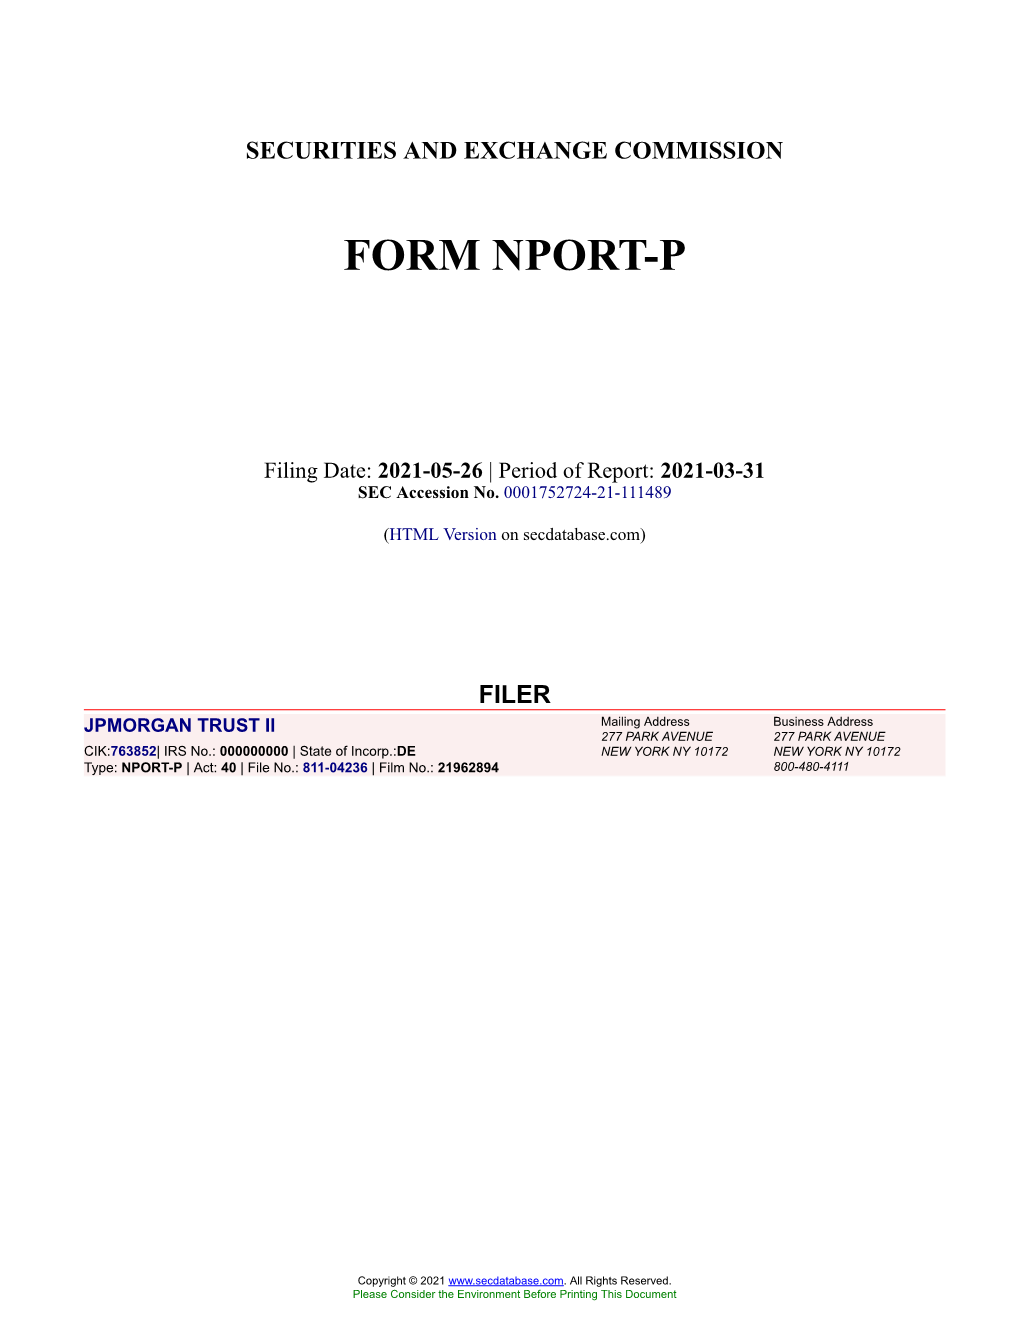 JPMORGAN TRUST II Form NPORT-P Filed 2021